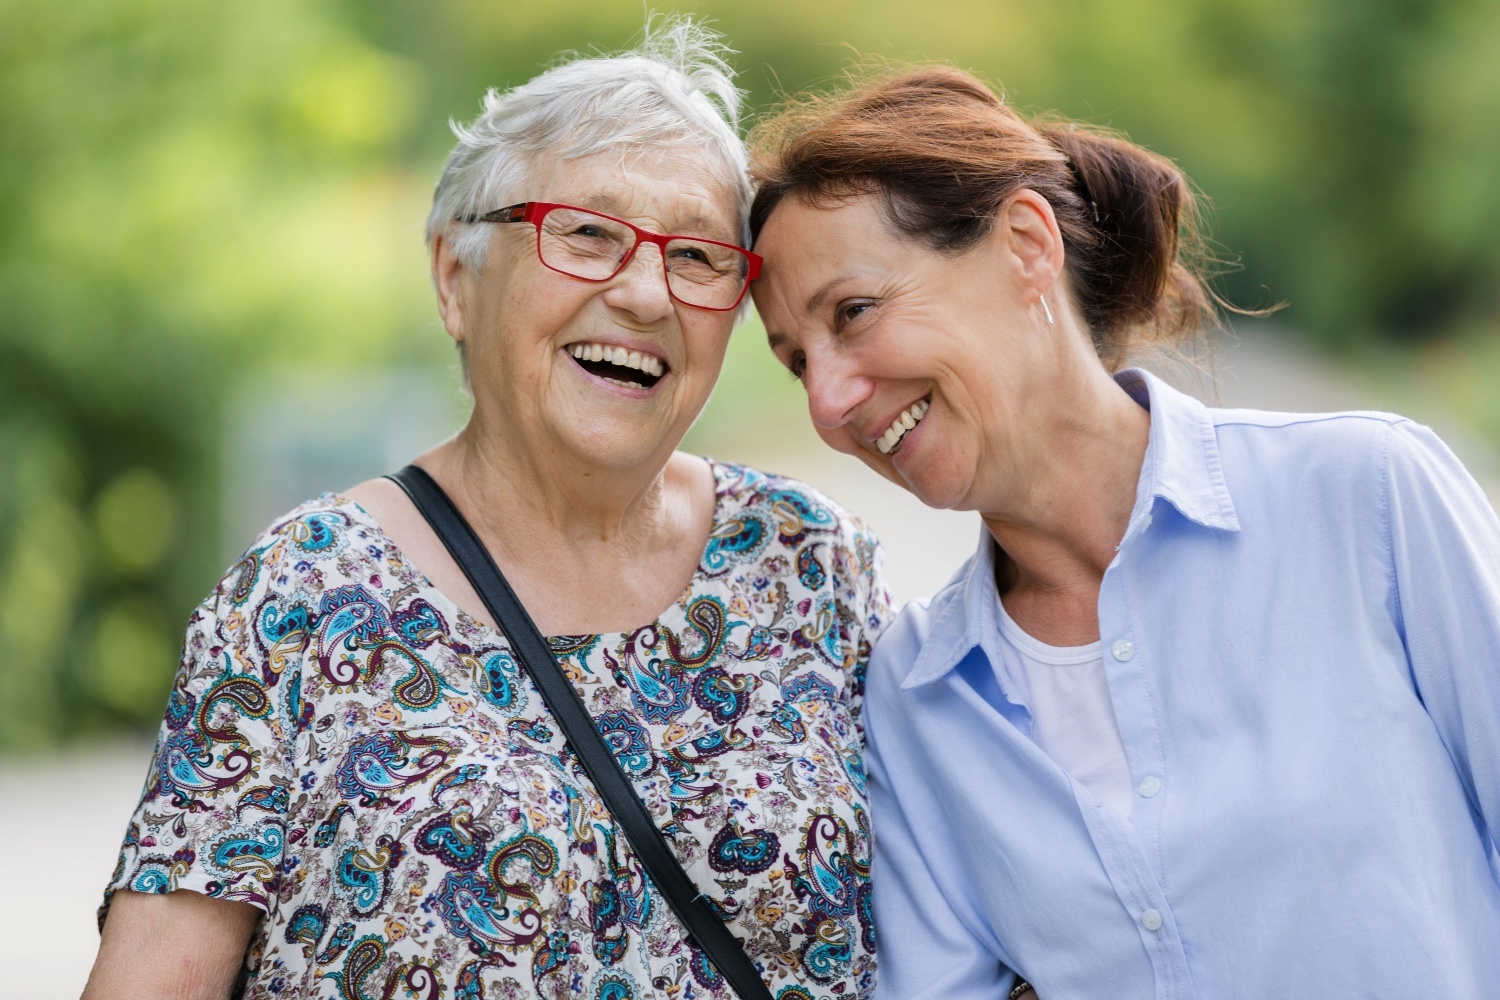 Two senior women laughing and walking